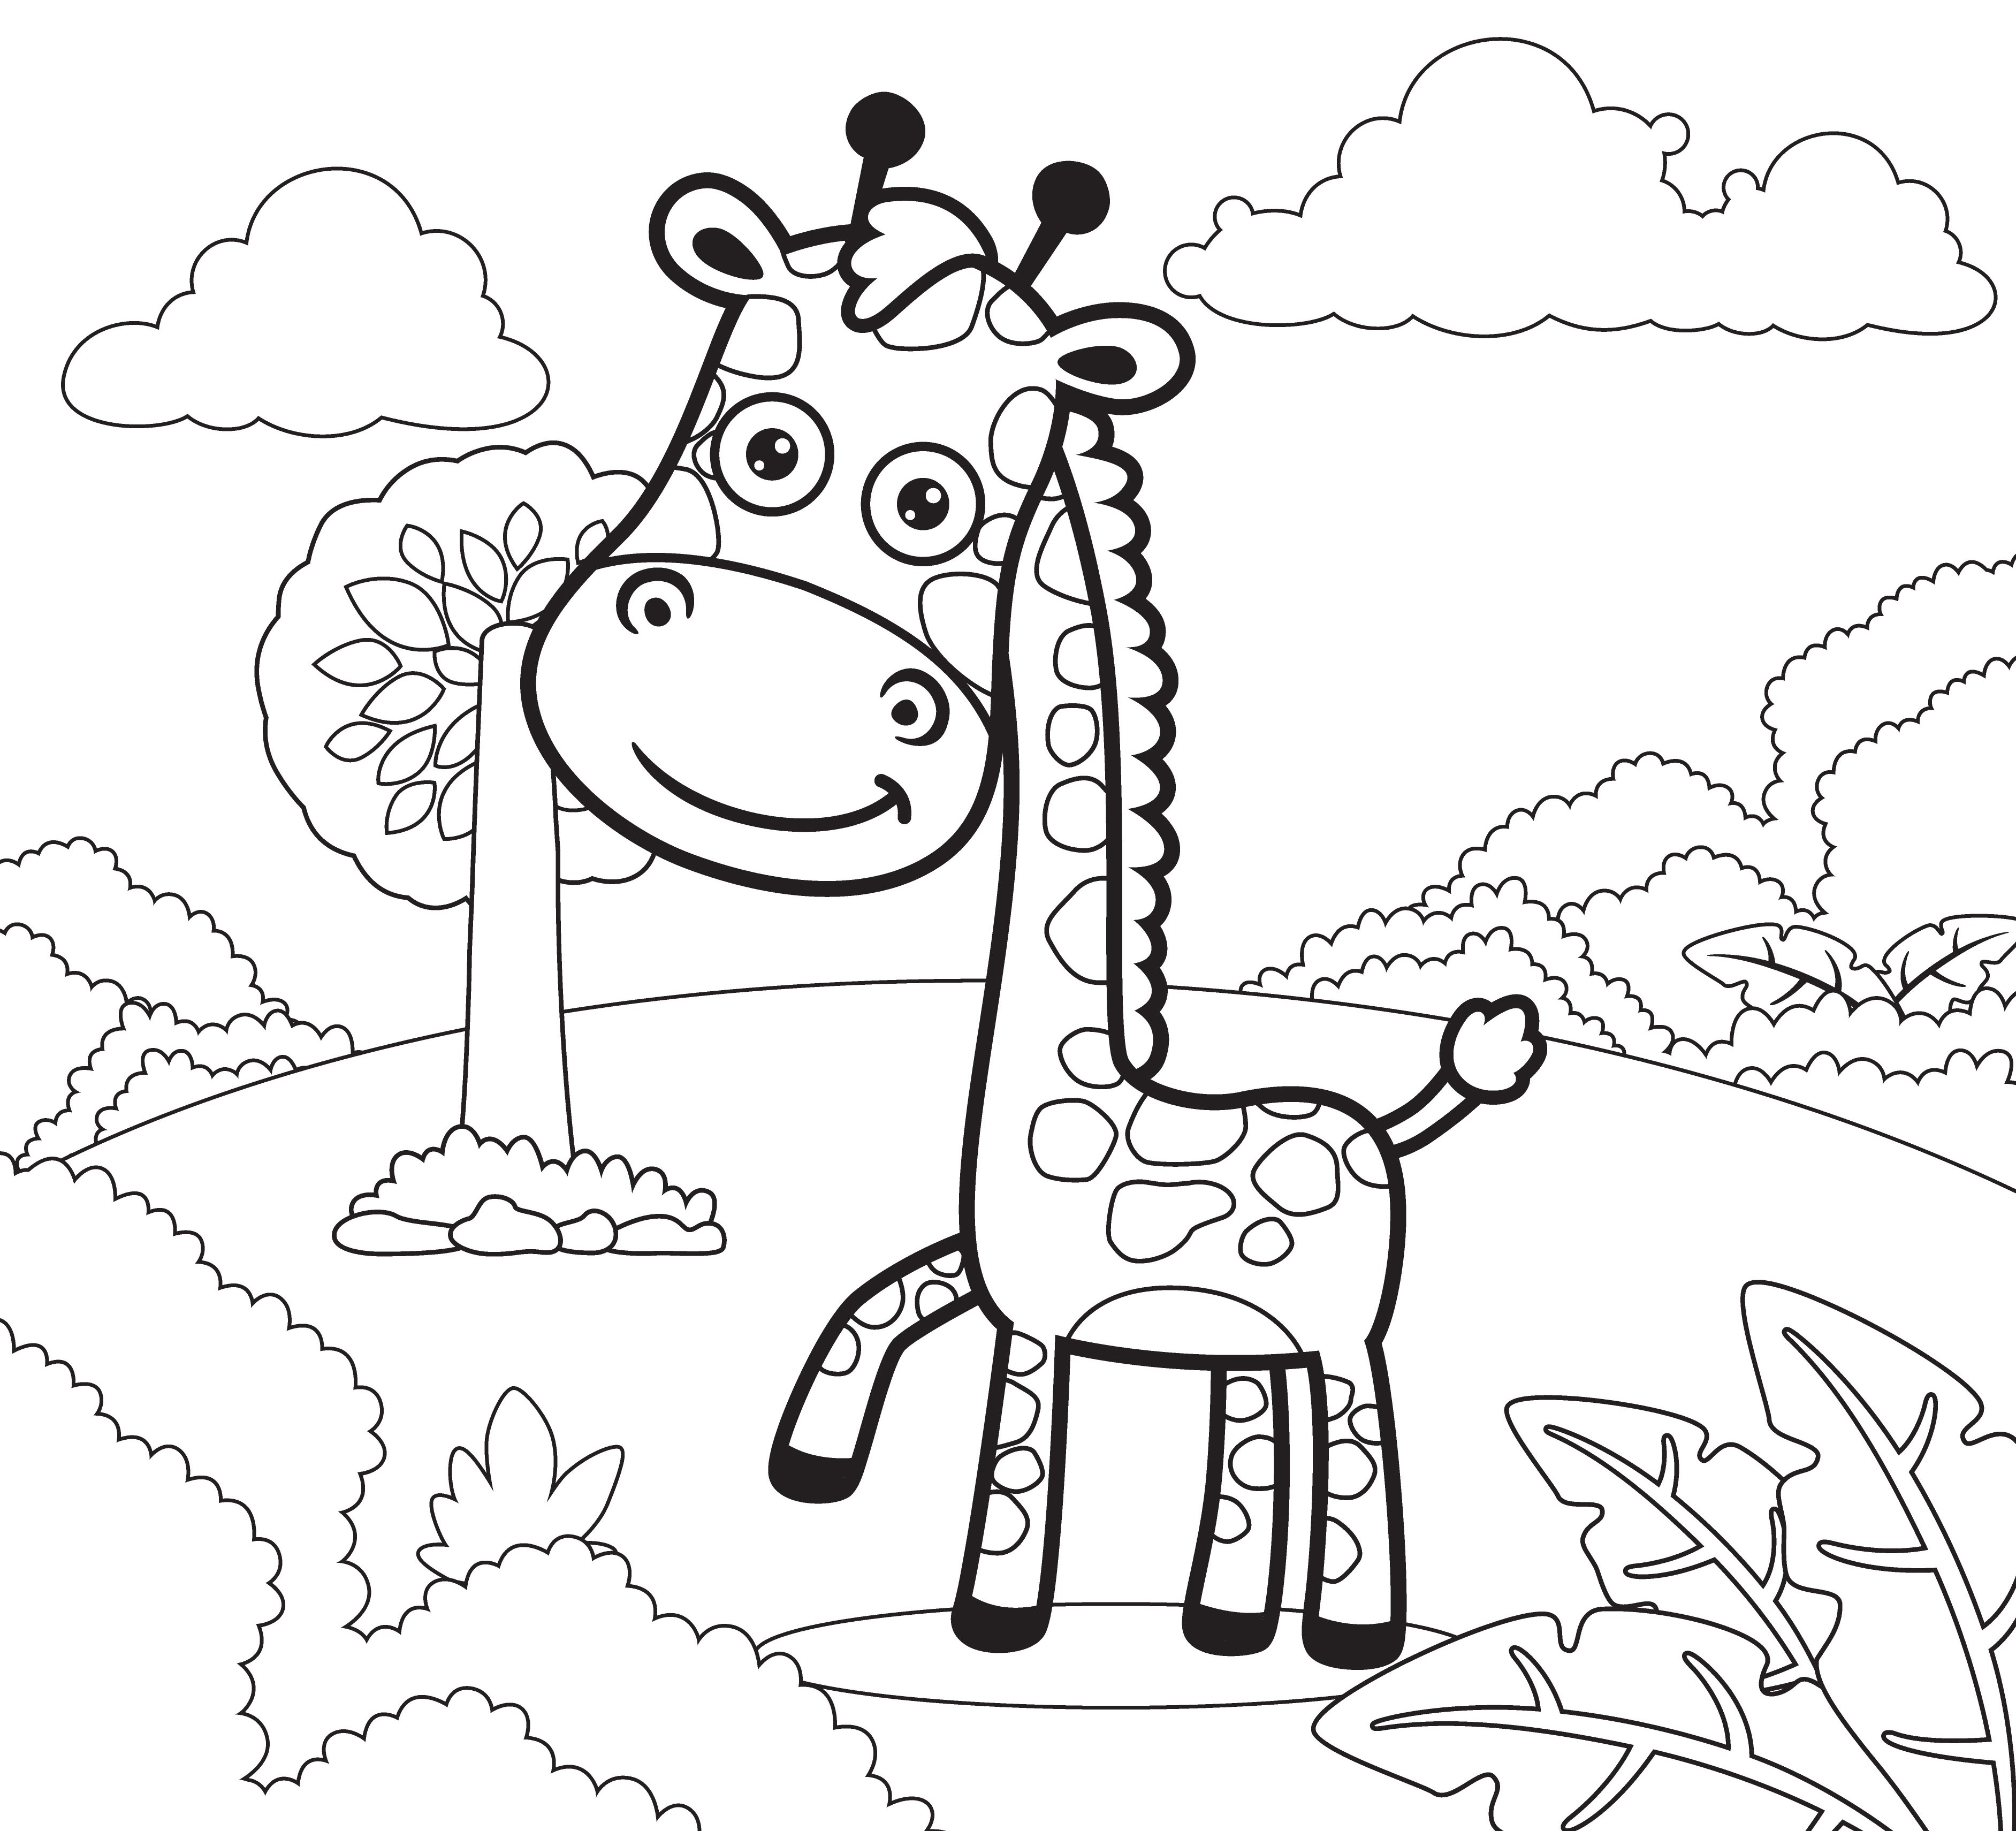 Раскраска мультяшный жираф на опушке леса формата А4 в высоком качестве